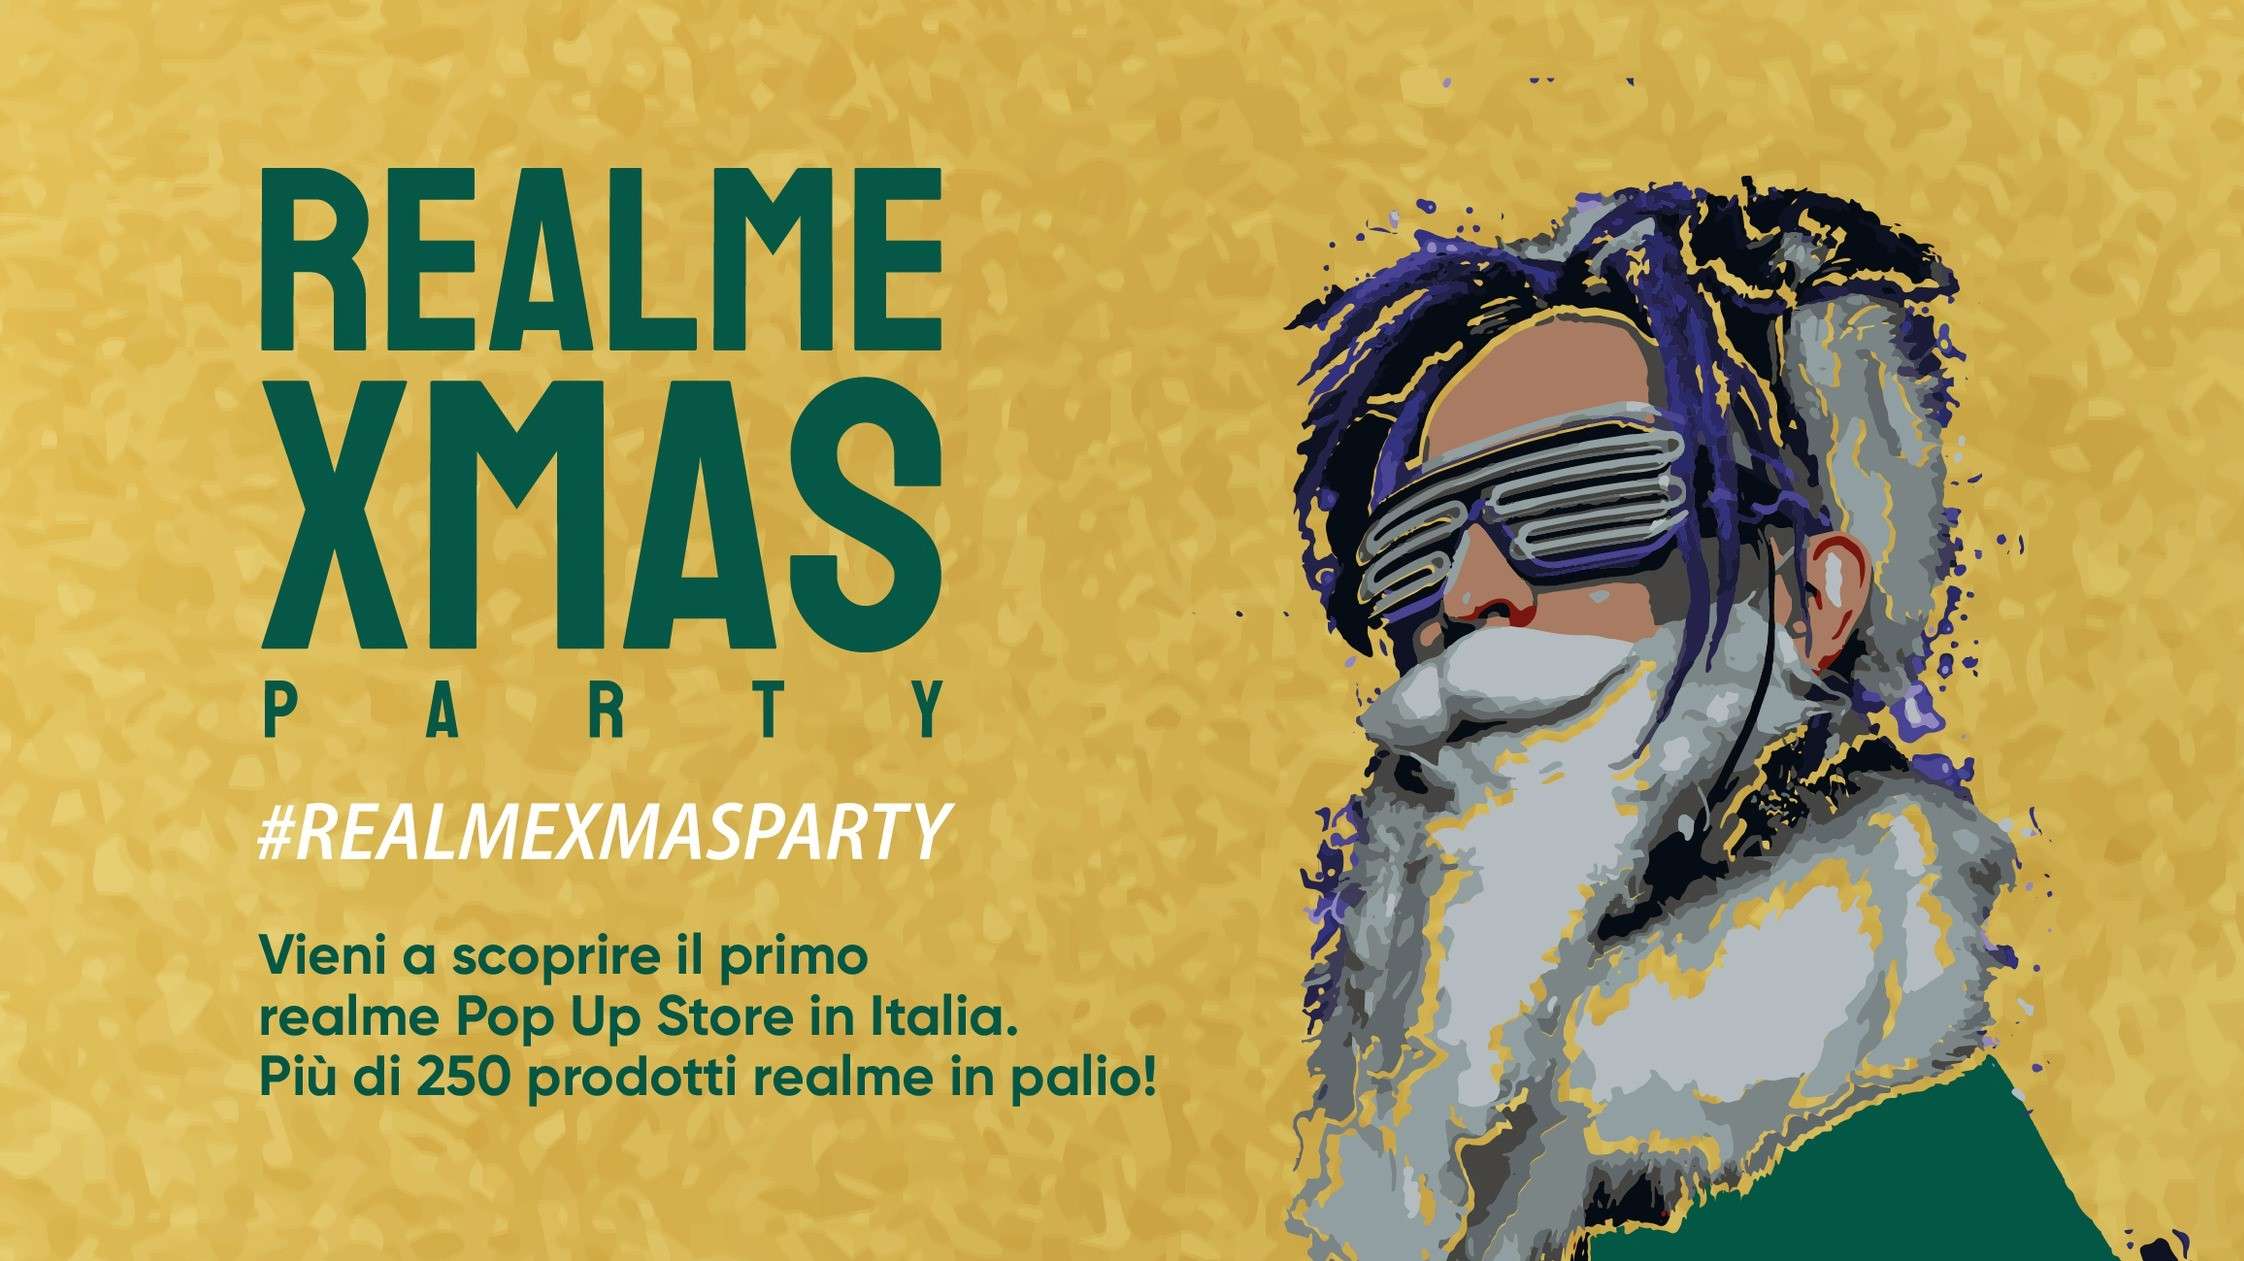 Realme inaugurerà ufficialmente il suo primo pop-up store in Italia